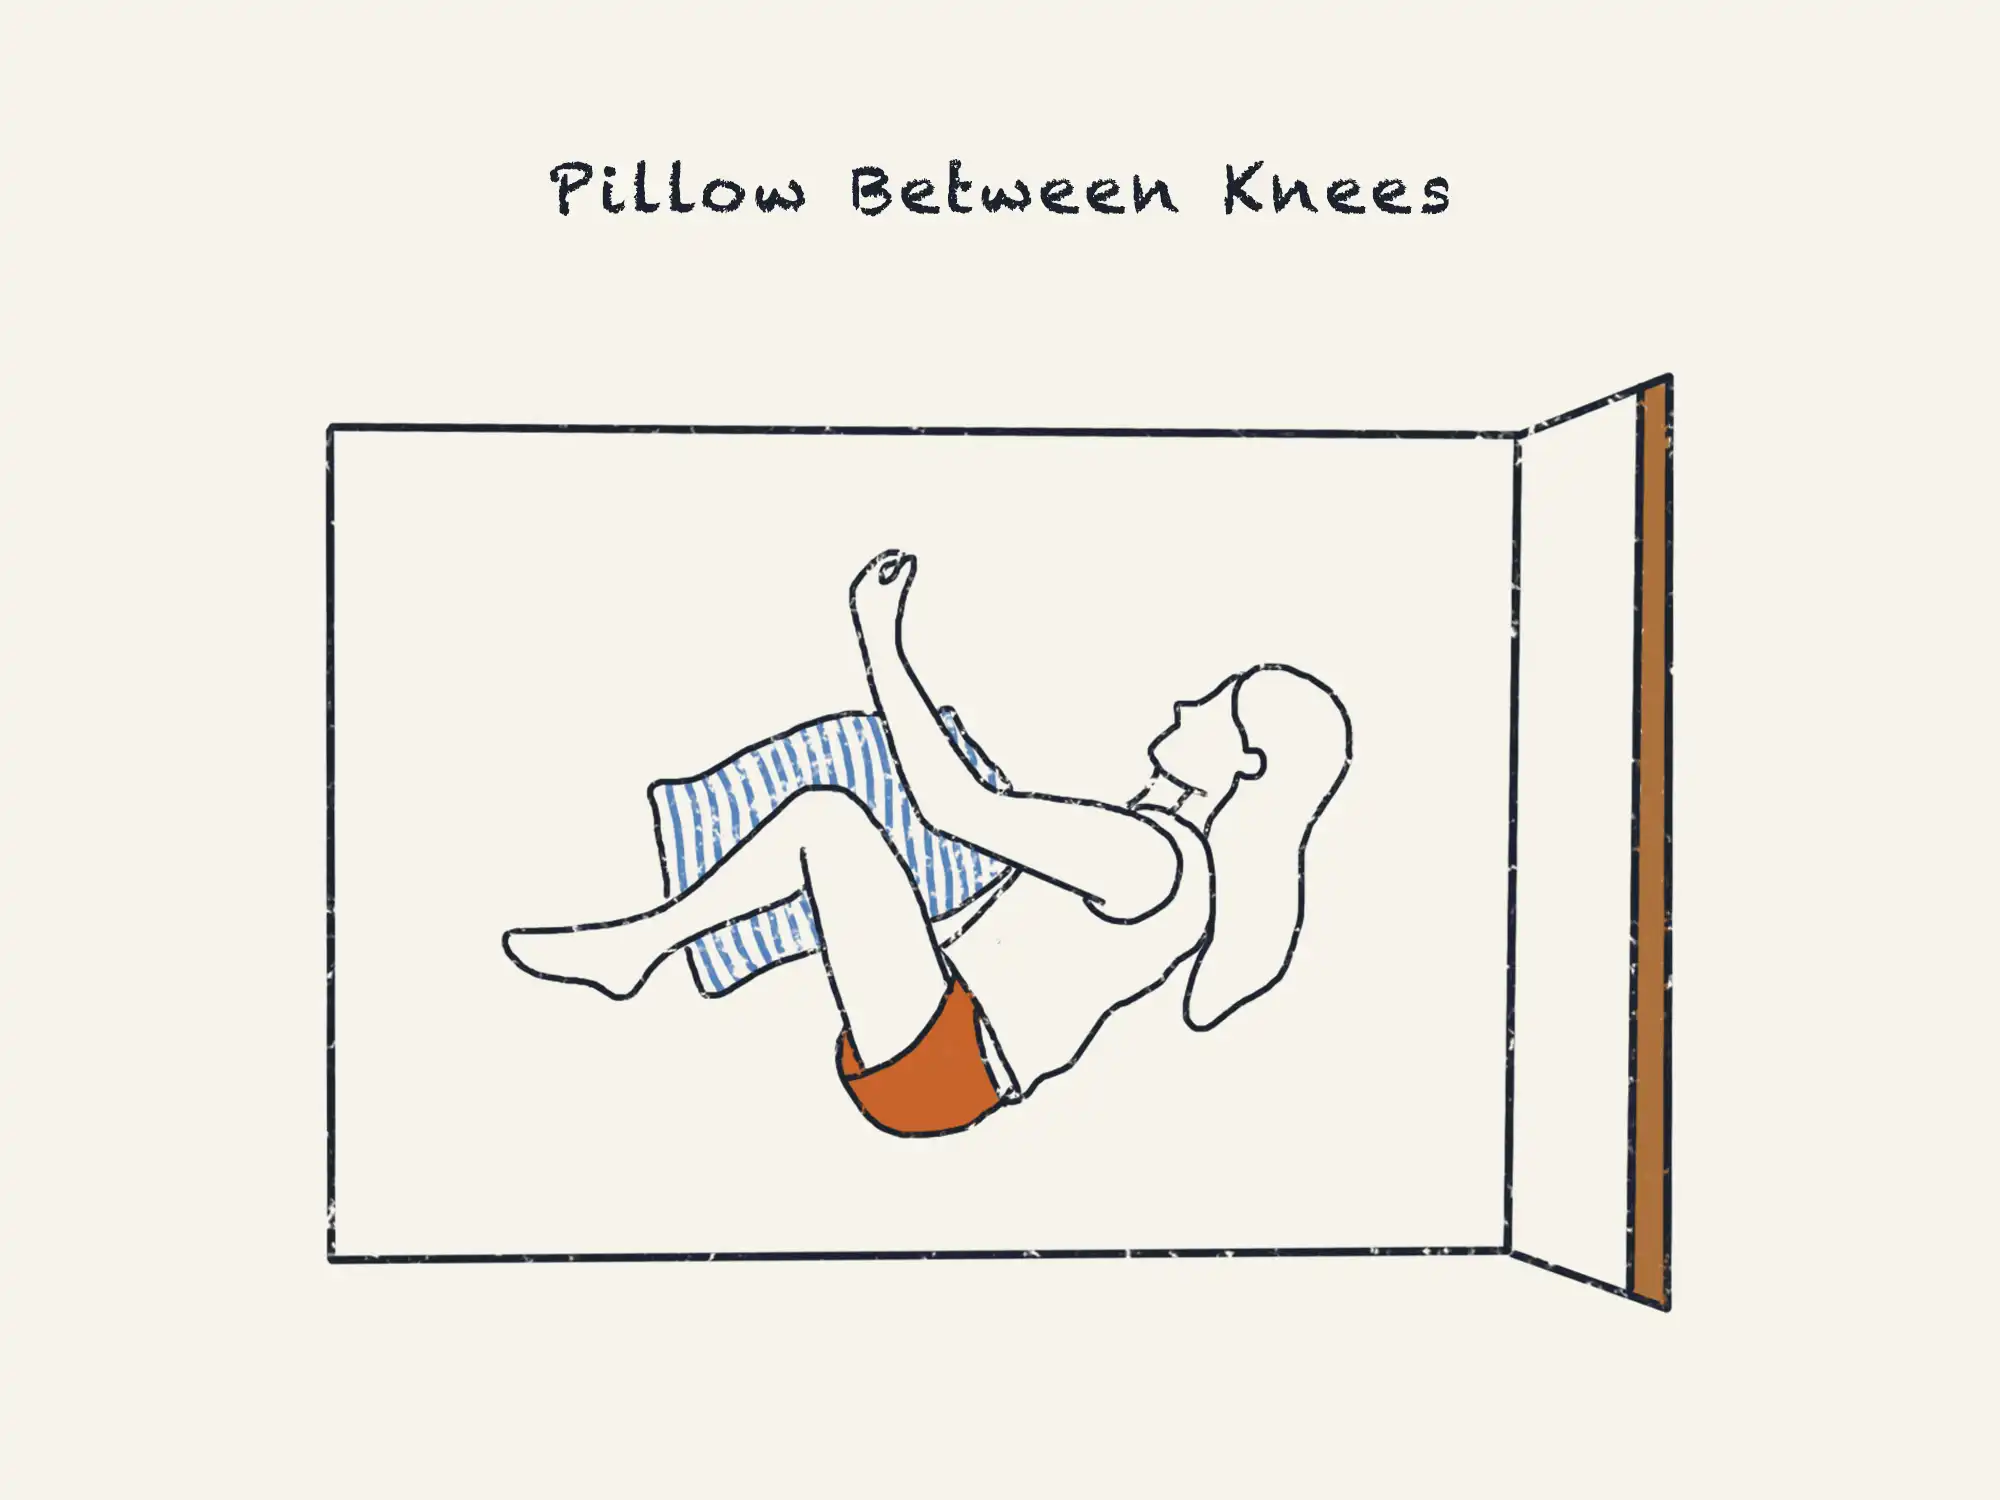 pillow between knees